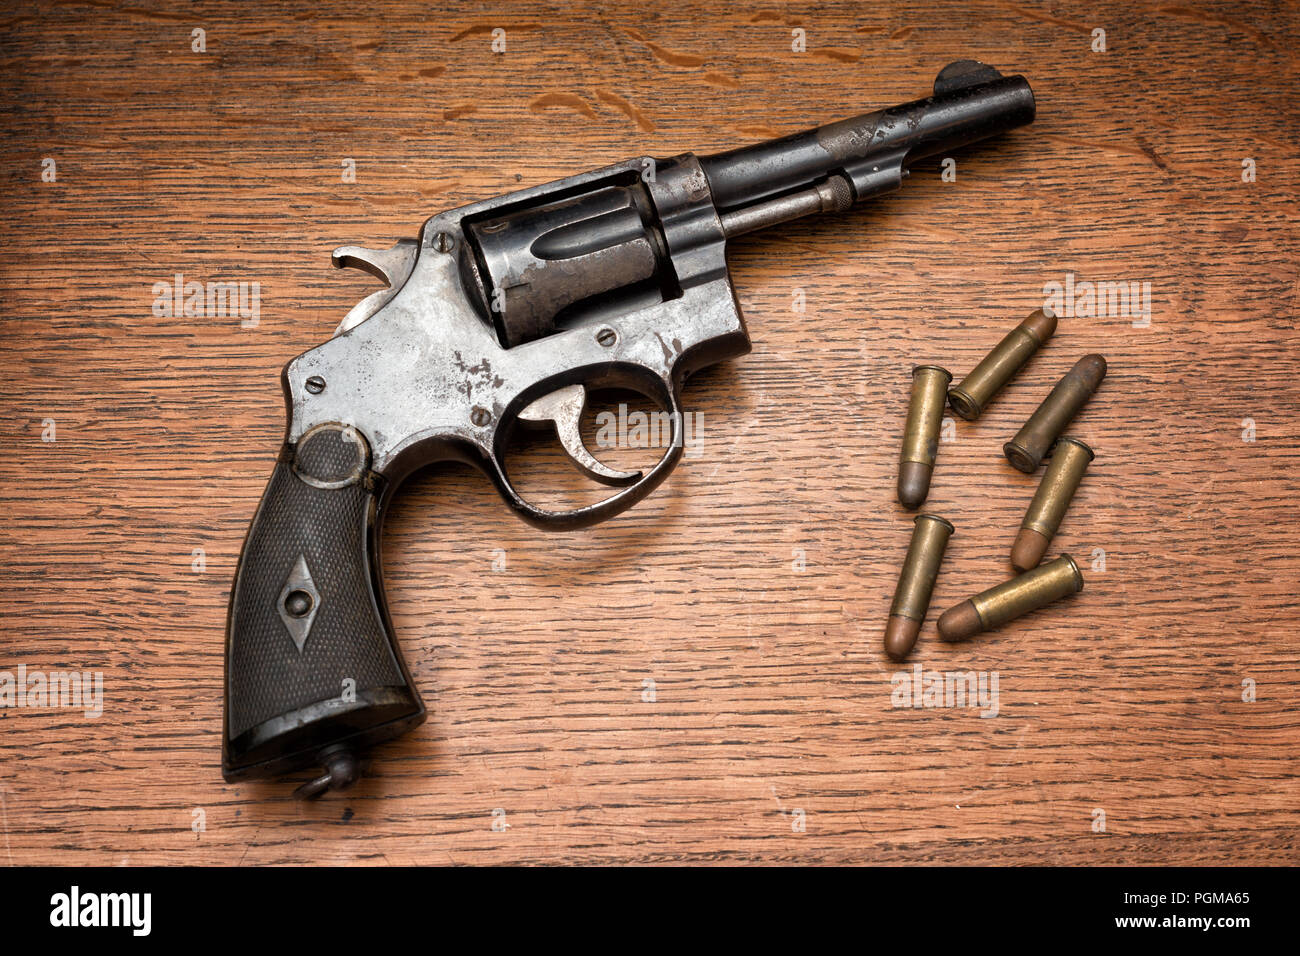 Alte militärische Polizei rostige Revolver Pistole und seinen sechs Kugeln auf einem hölzernen Tisch Stockfoto